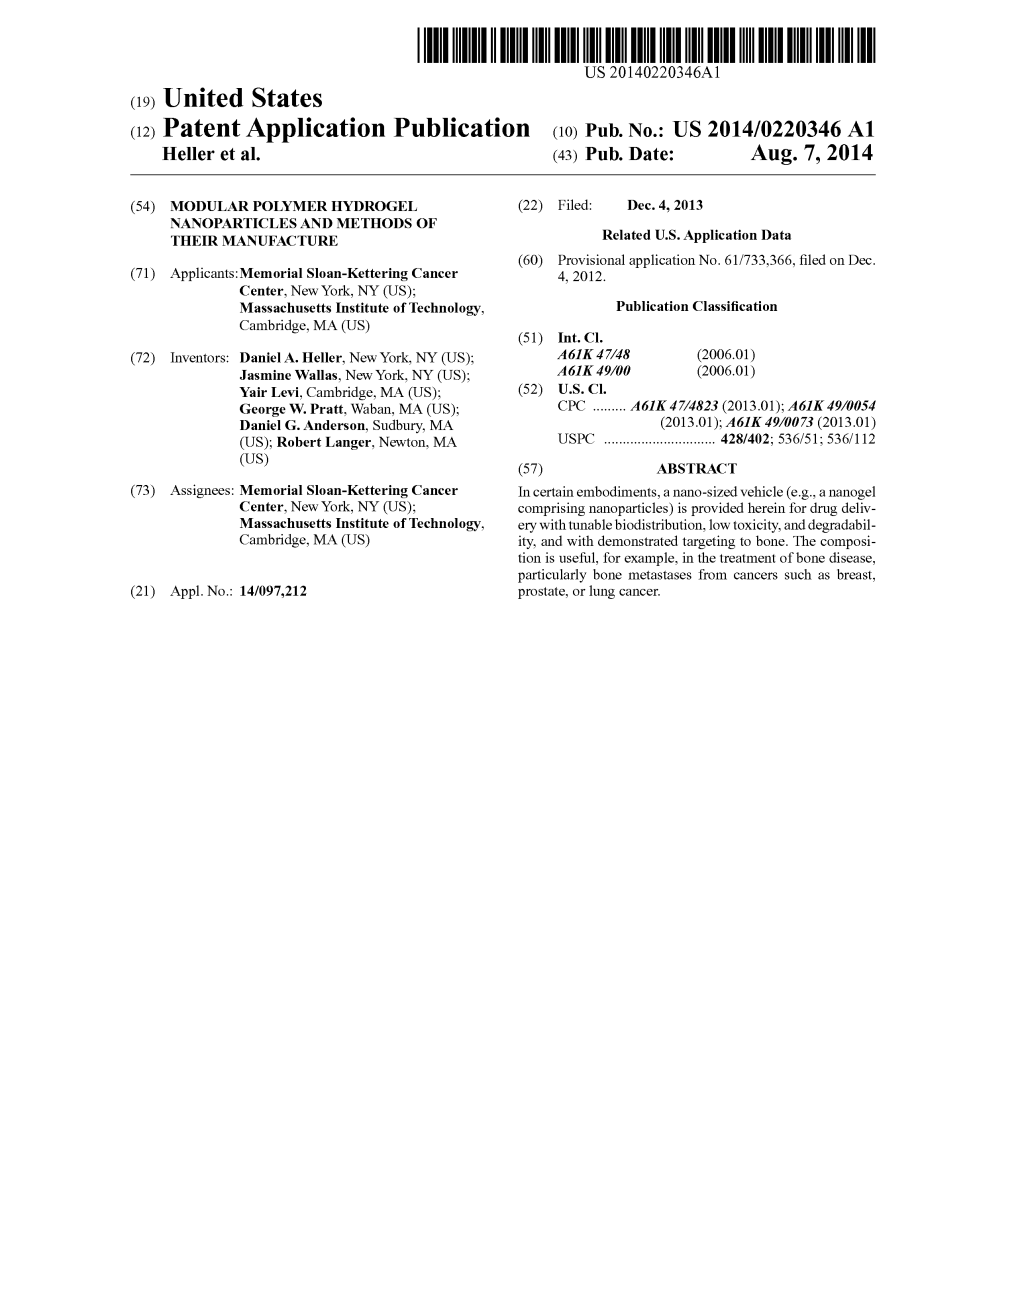 (12) Patent Application Publication (10) Pub. No.: US 2014/0220346A1 Heller Et Al